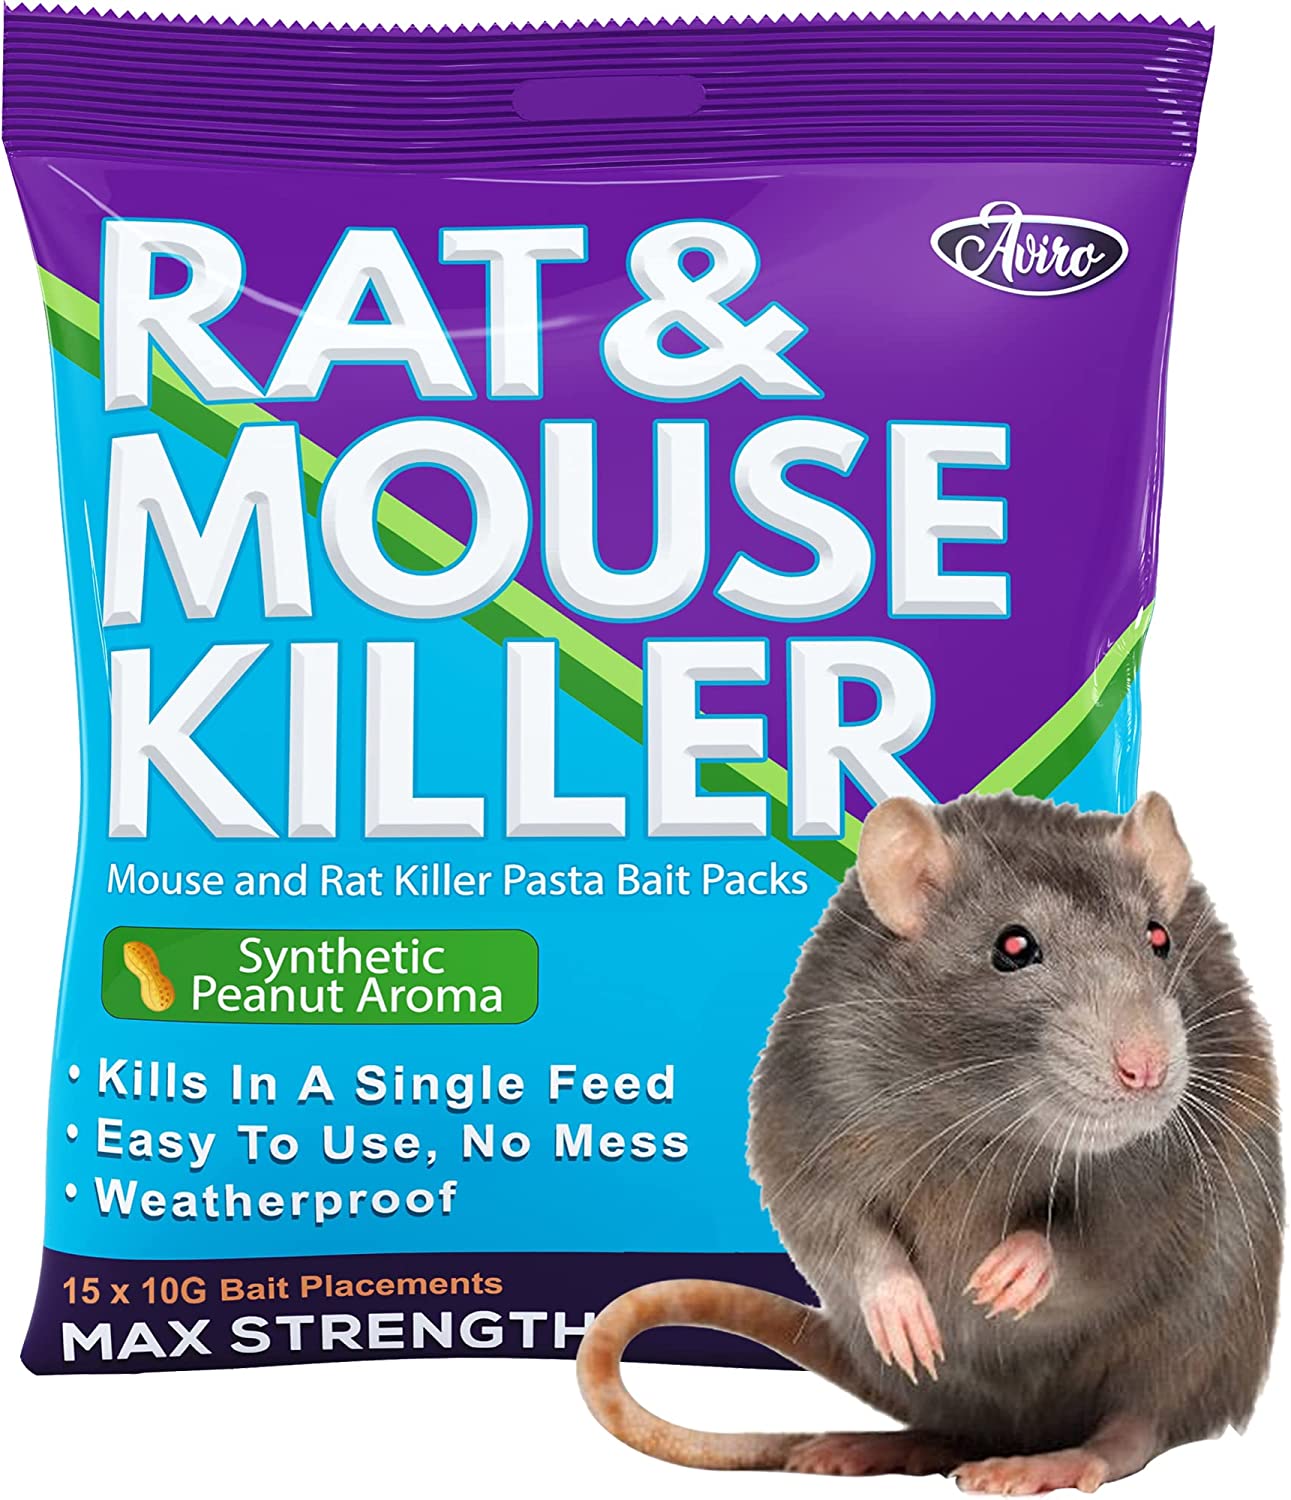 Mouse Bait